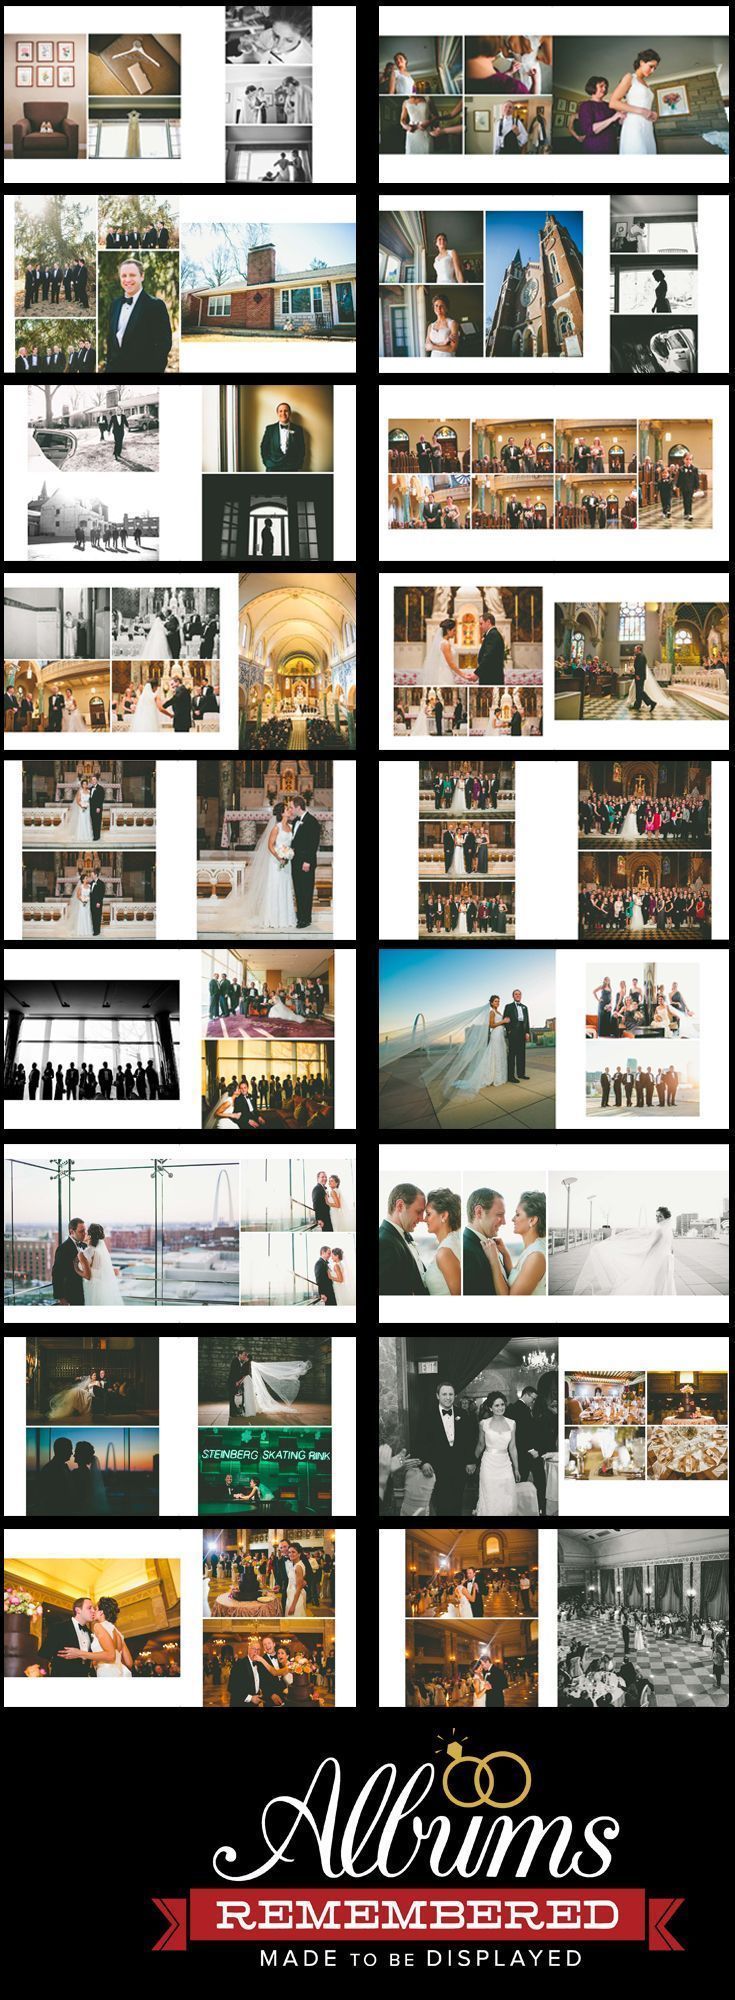 15 wedding Photos album ideas